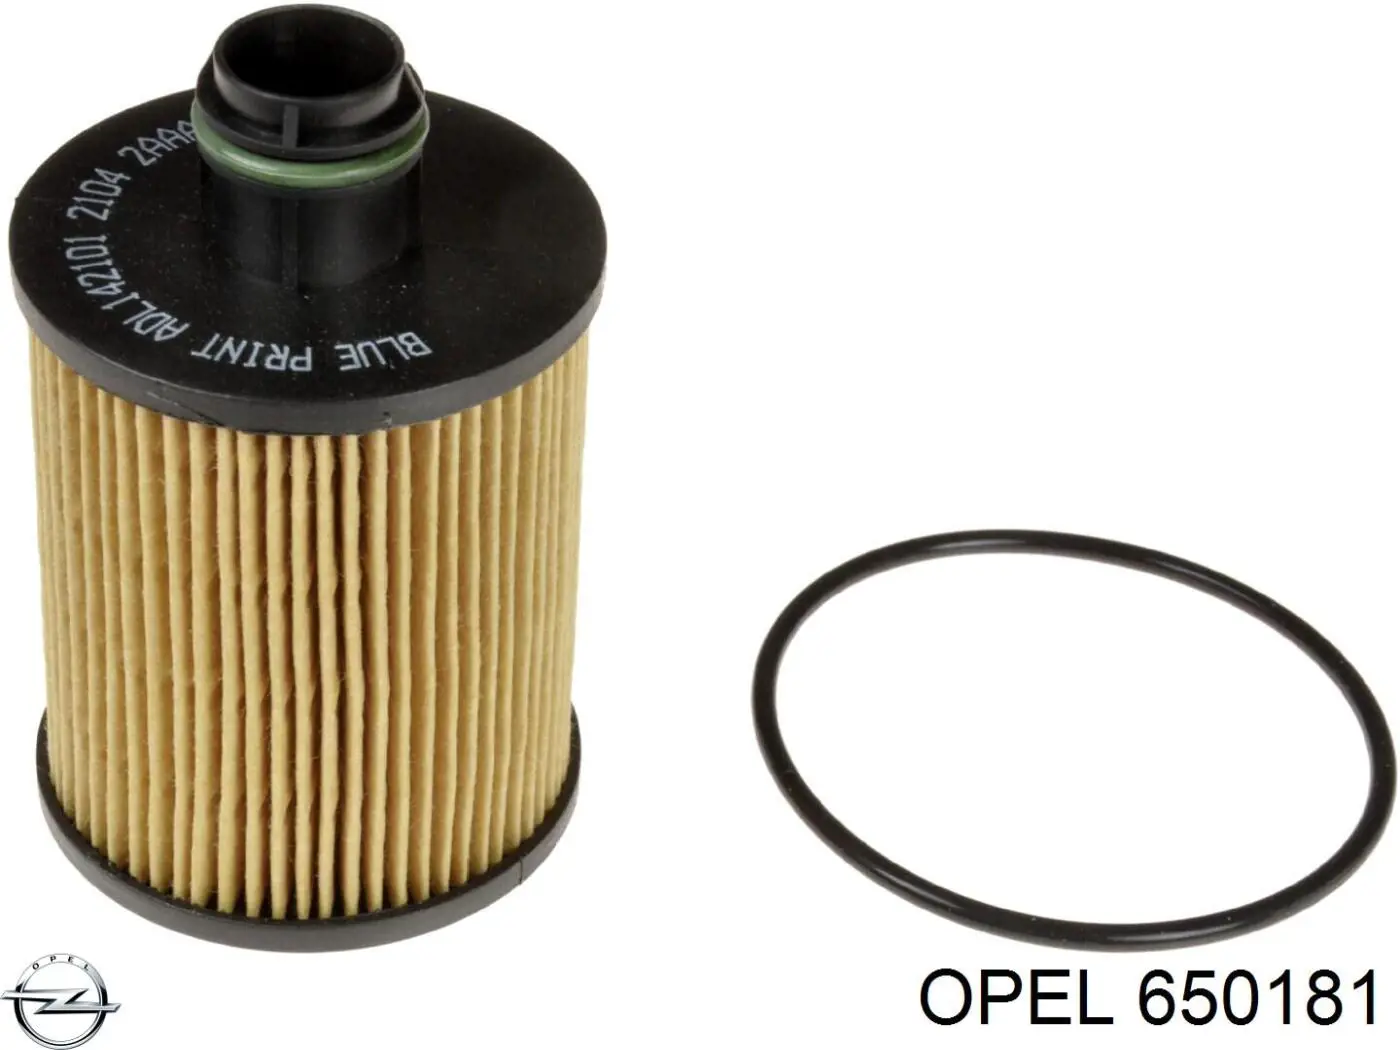 650181 Opel filtro de aceite